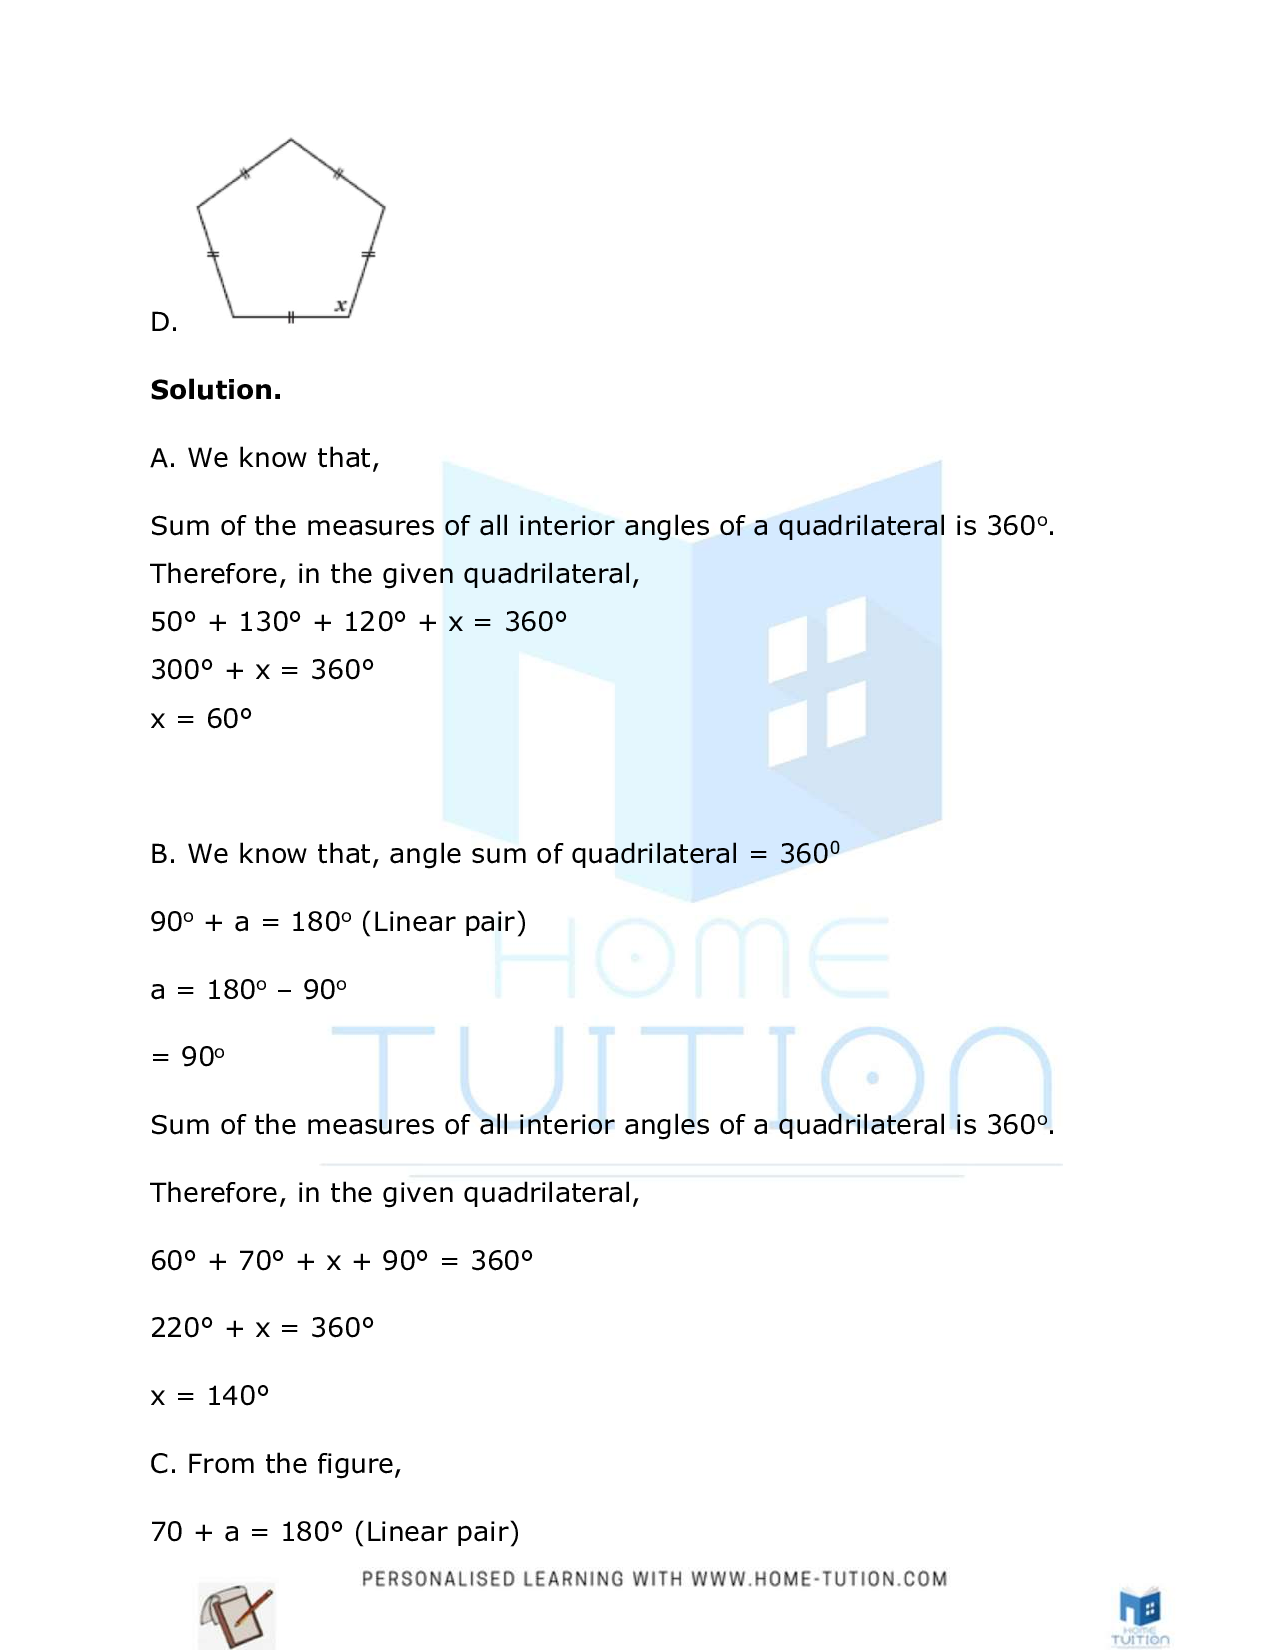 Class 8 Maths Chapter 3 Understanding Quadrilaterals